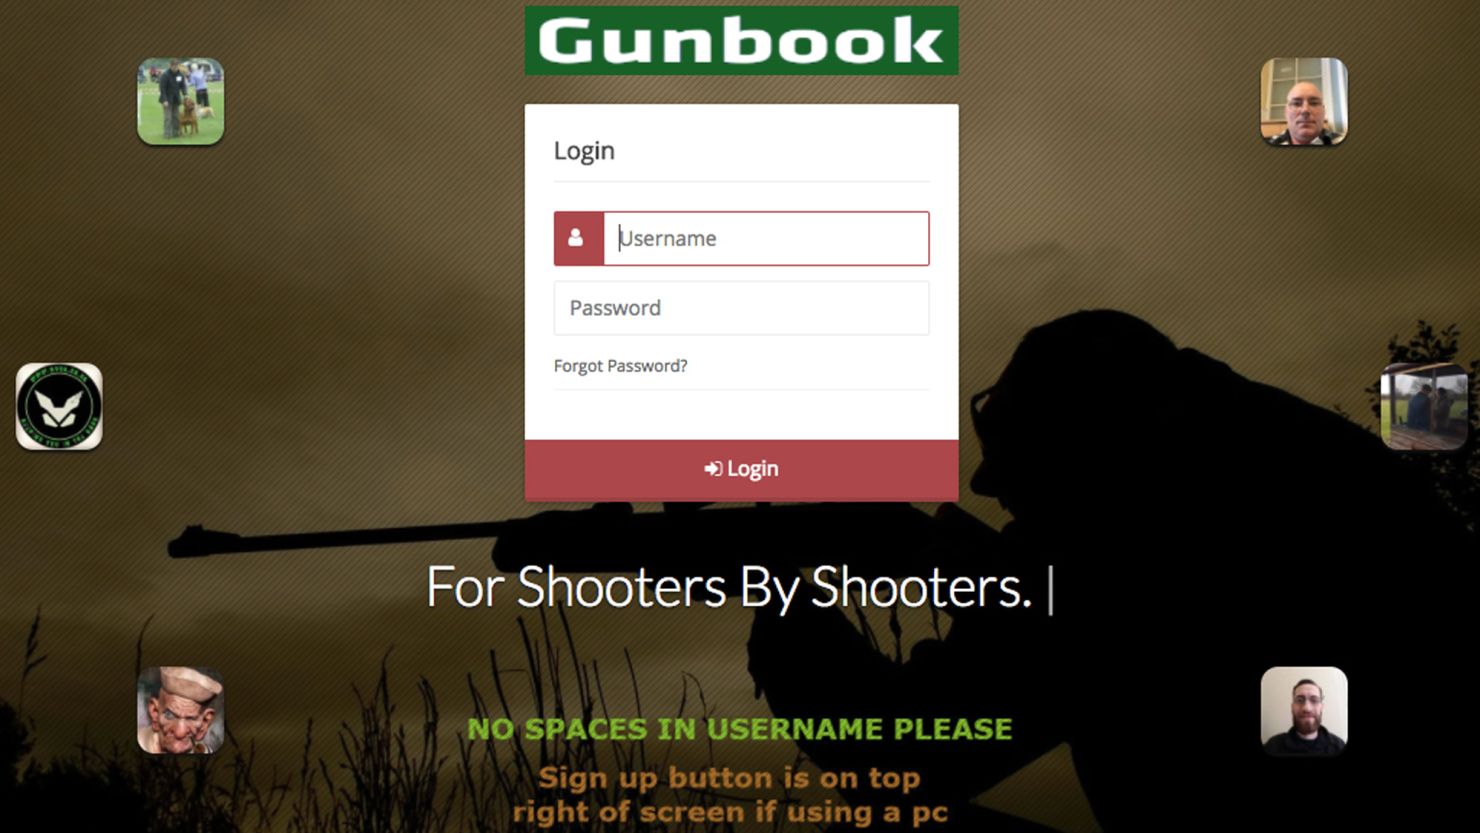 001 Gunbook.com